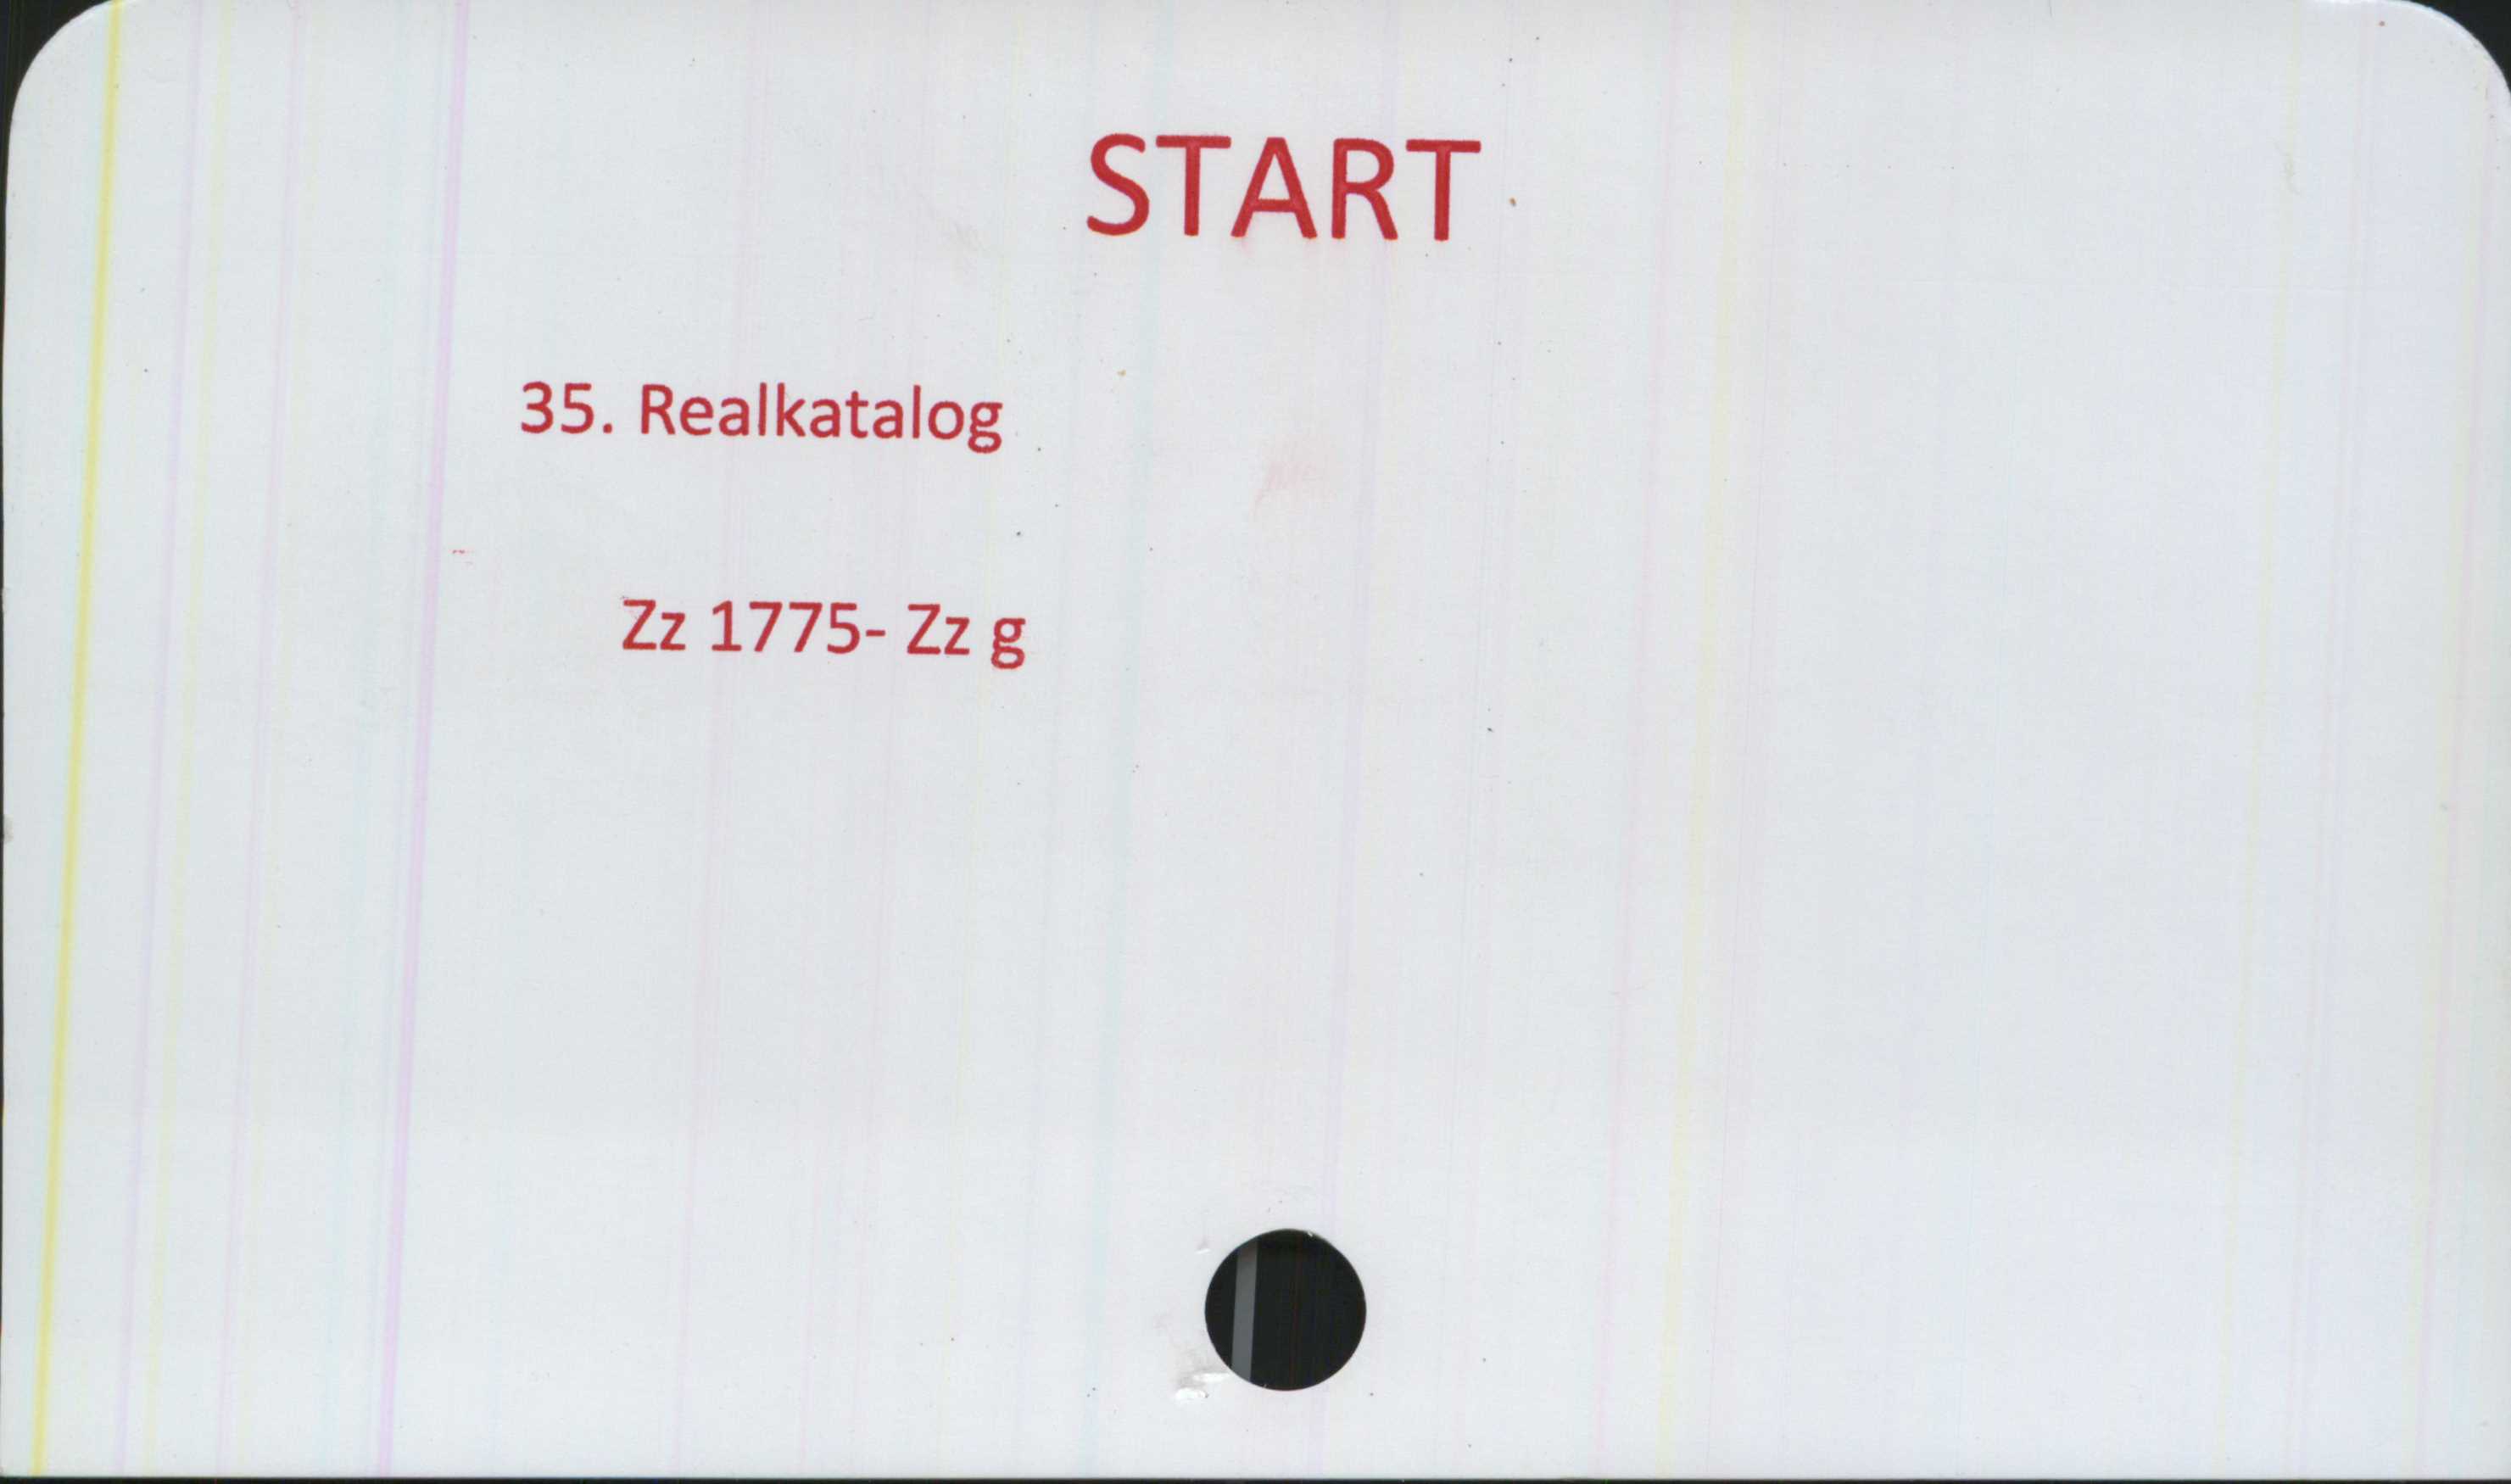  ﻿START

35. Realkatalog